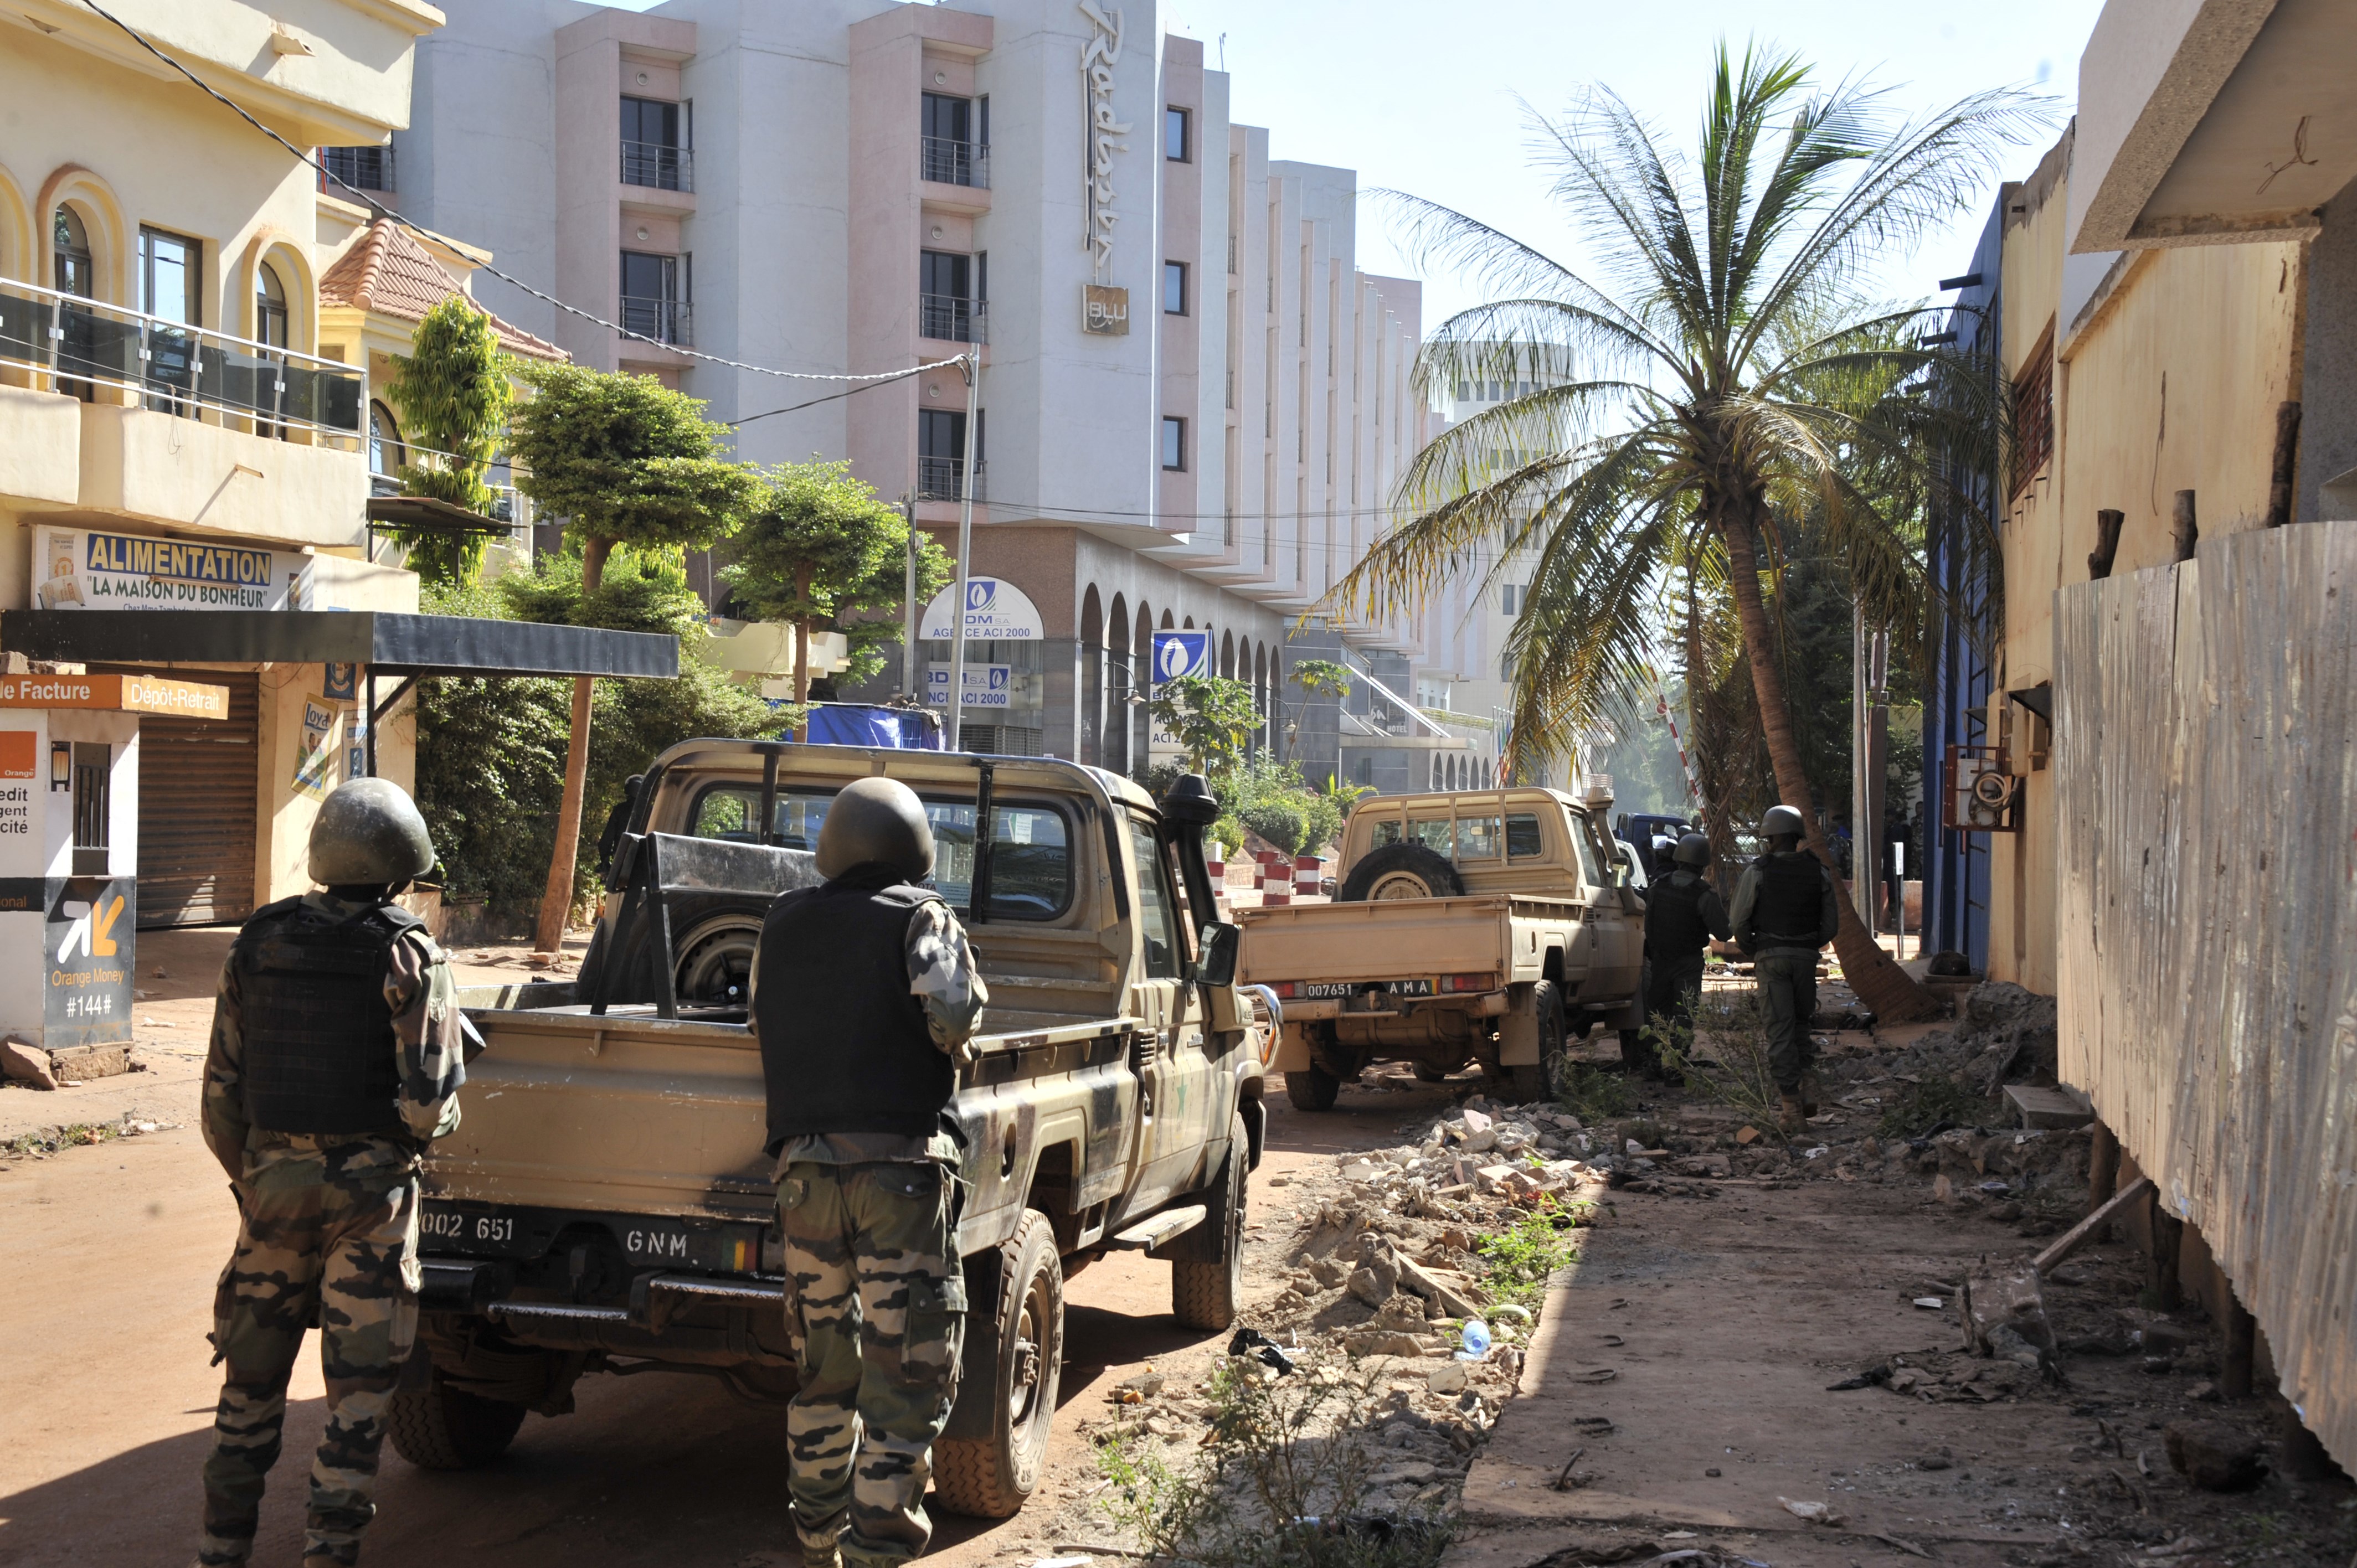 Live-Ticker Geiselnahme in Mali: 18:02 wurde das Hotel gestürmt und die Aktion beendet